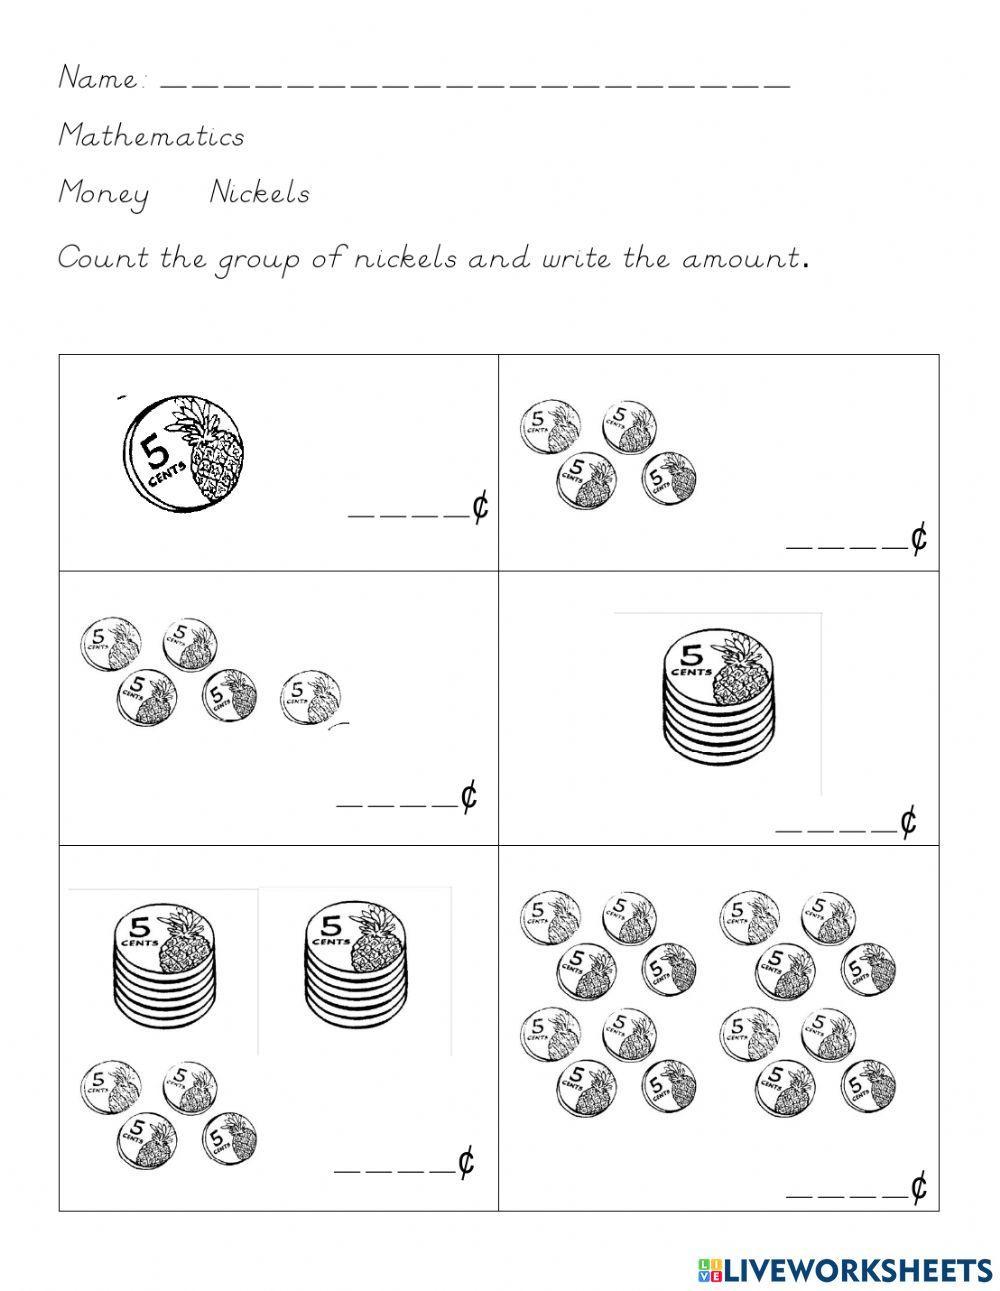 Counting bahamian nickels